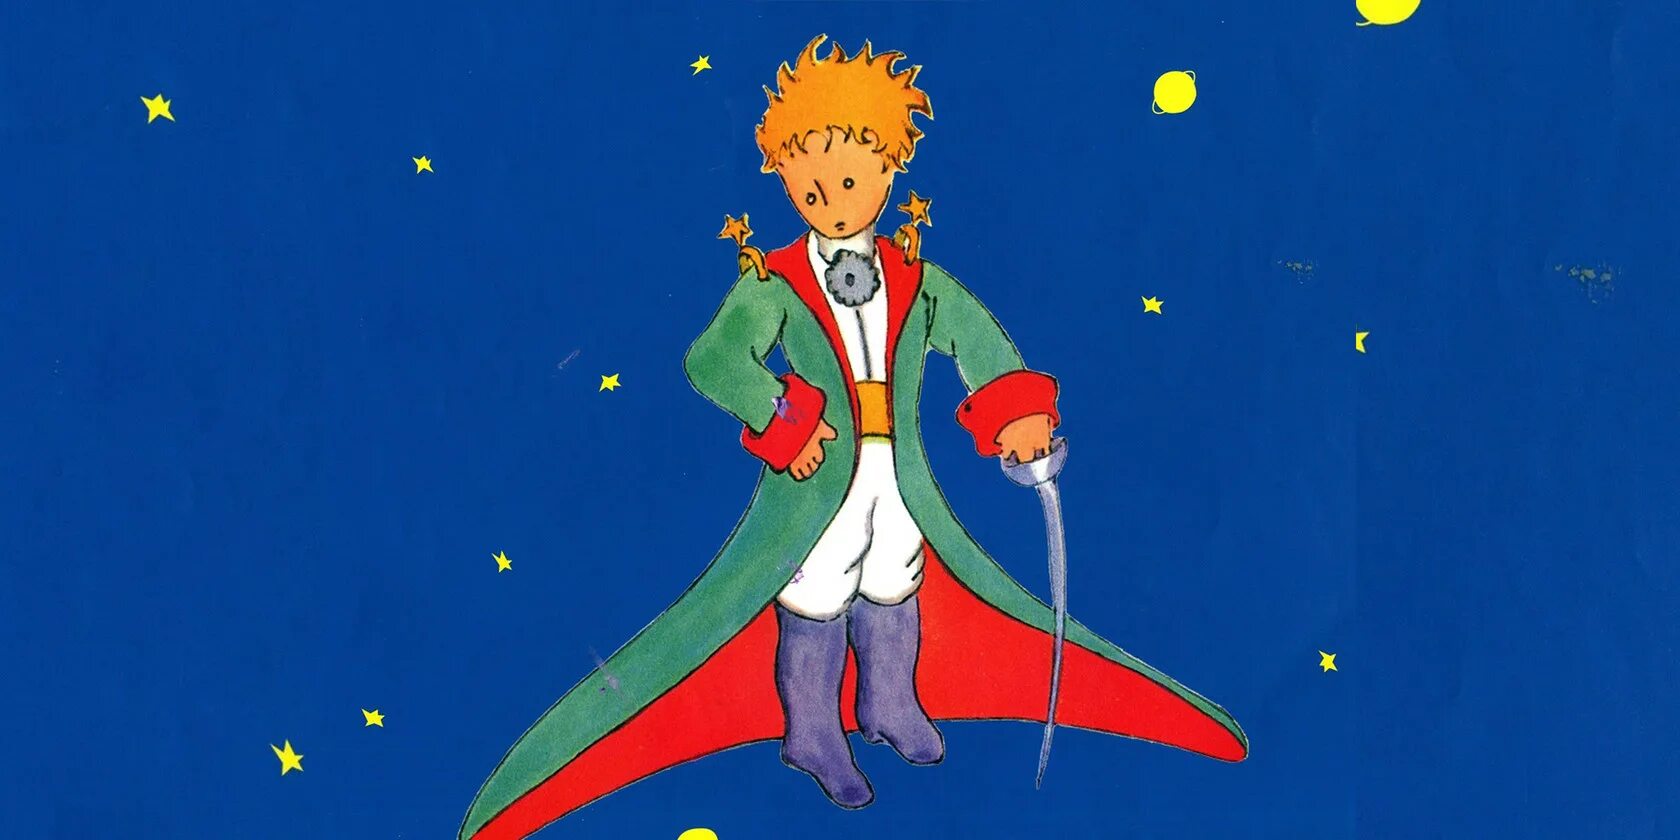 Маленький принц вырос. Иллюстрации к сказке маленький принц Экзюпери. Маленький принц Звездочет. Сказка маленький принц. Картинки к сказке маленький принц.